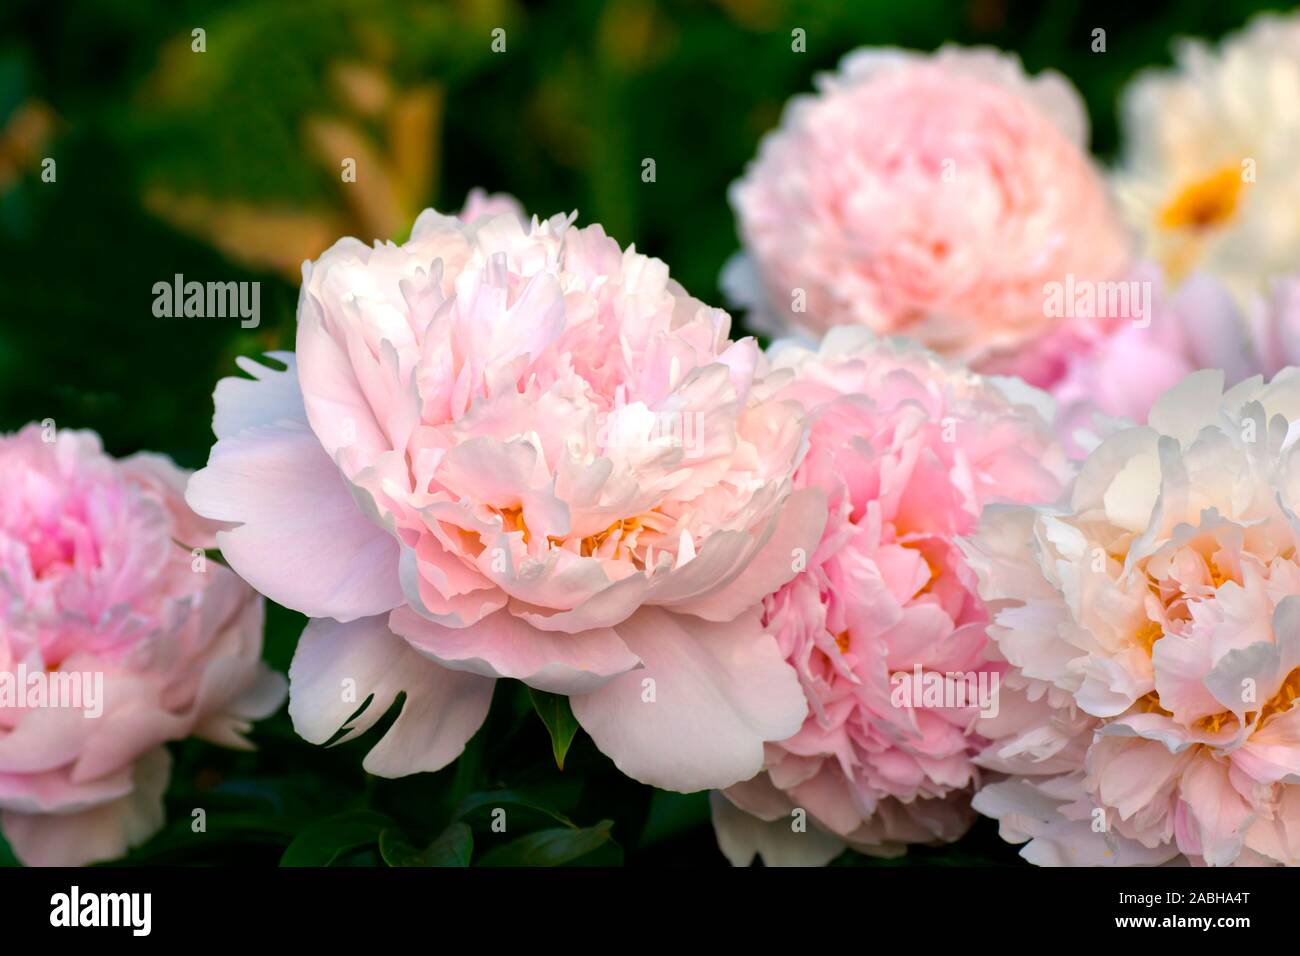 Paeonia Pillow Talk. Doppelzimmer Rosa Pfingstrose. Paeonia lactiflora (Chinesische Pfingstrose oder gemeinsamen Garten päonie). Schöne rosa Pfingstrosen. Stockfoto